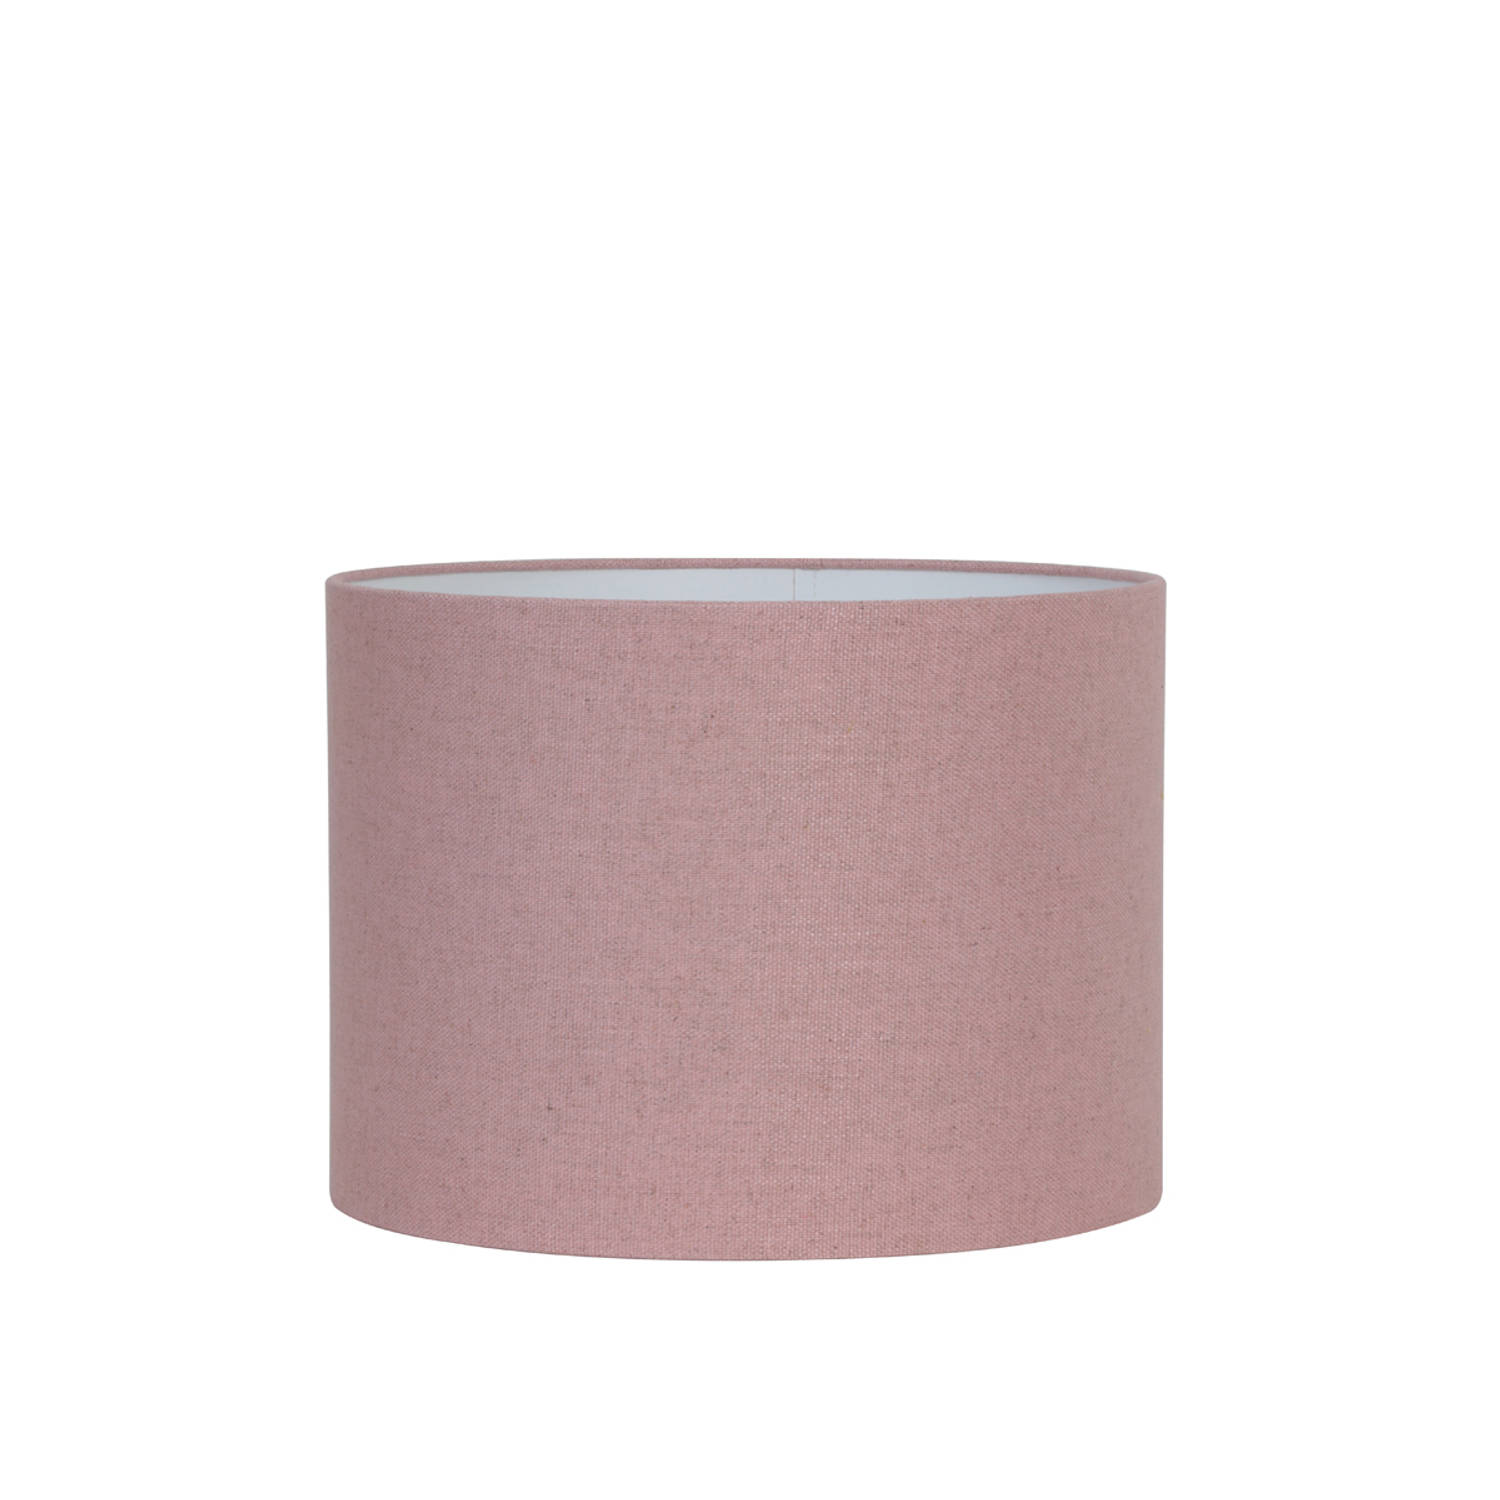 Kap cilinder 40-40-30 cm LIVIGNO roze Light & Living